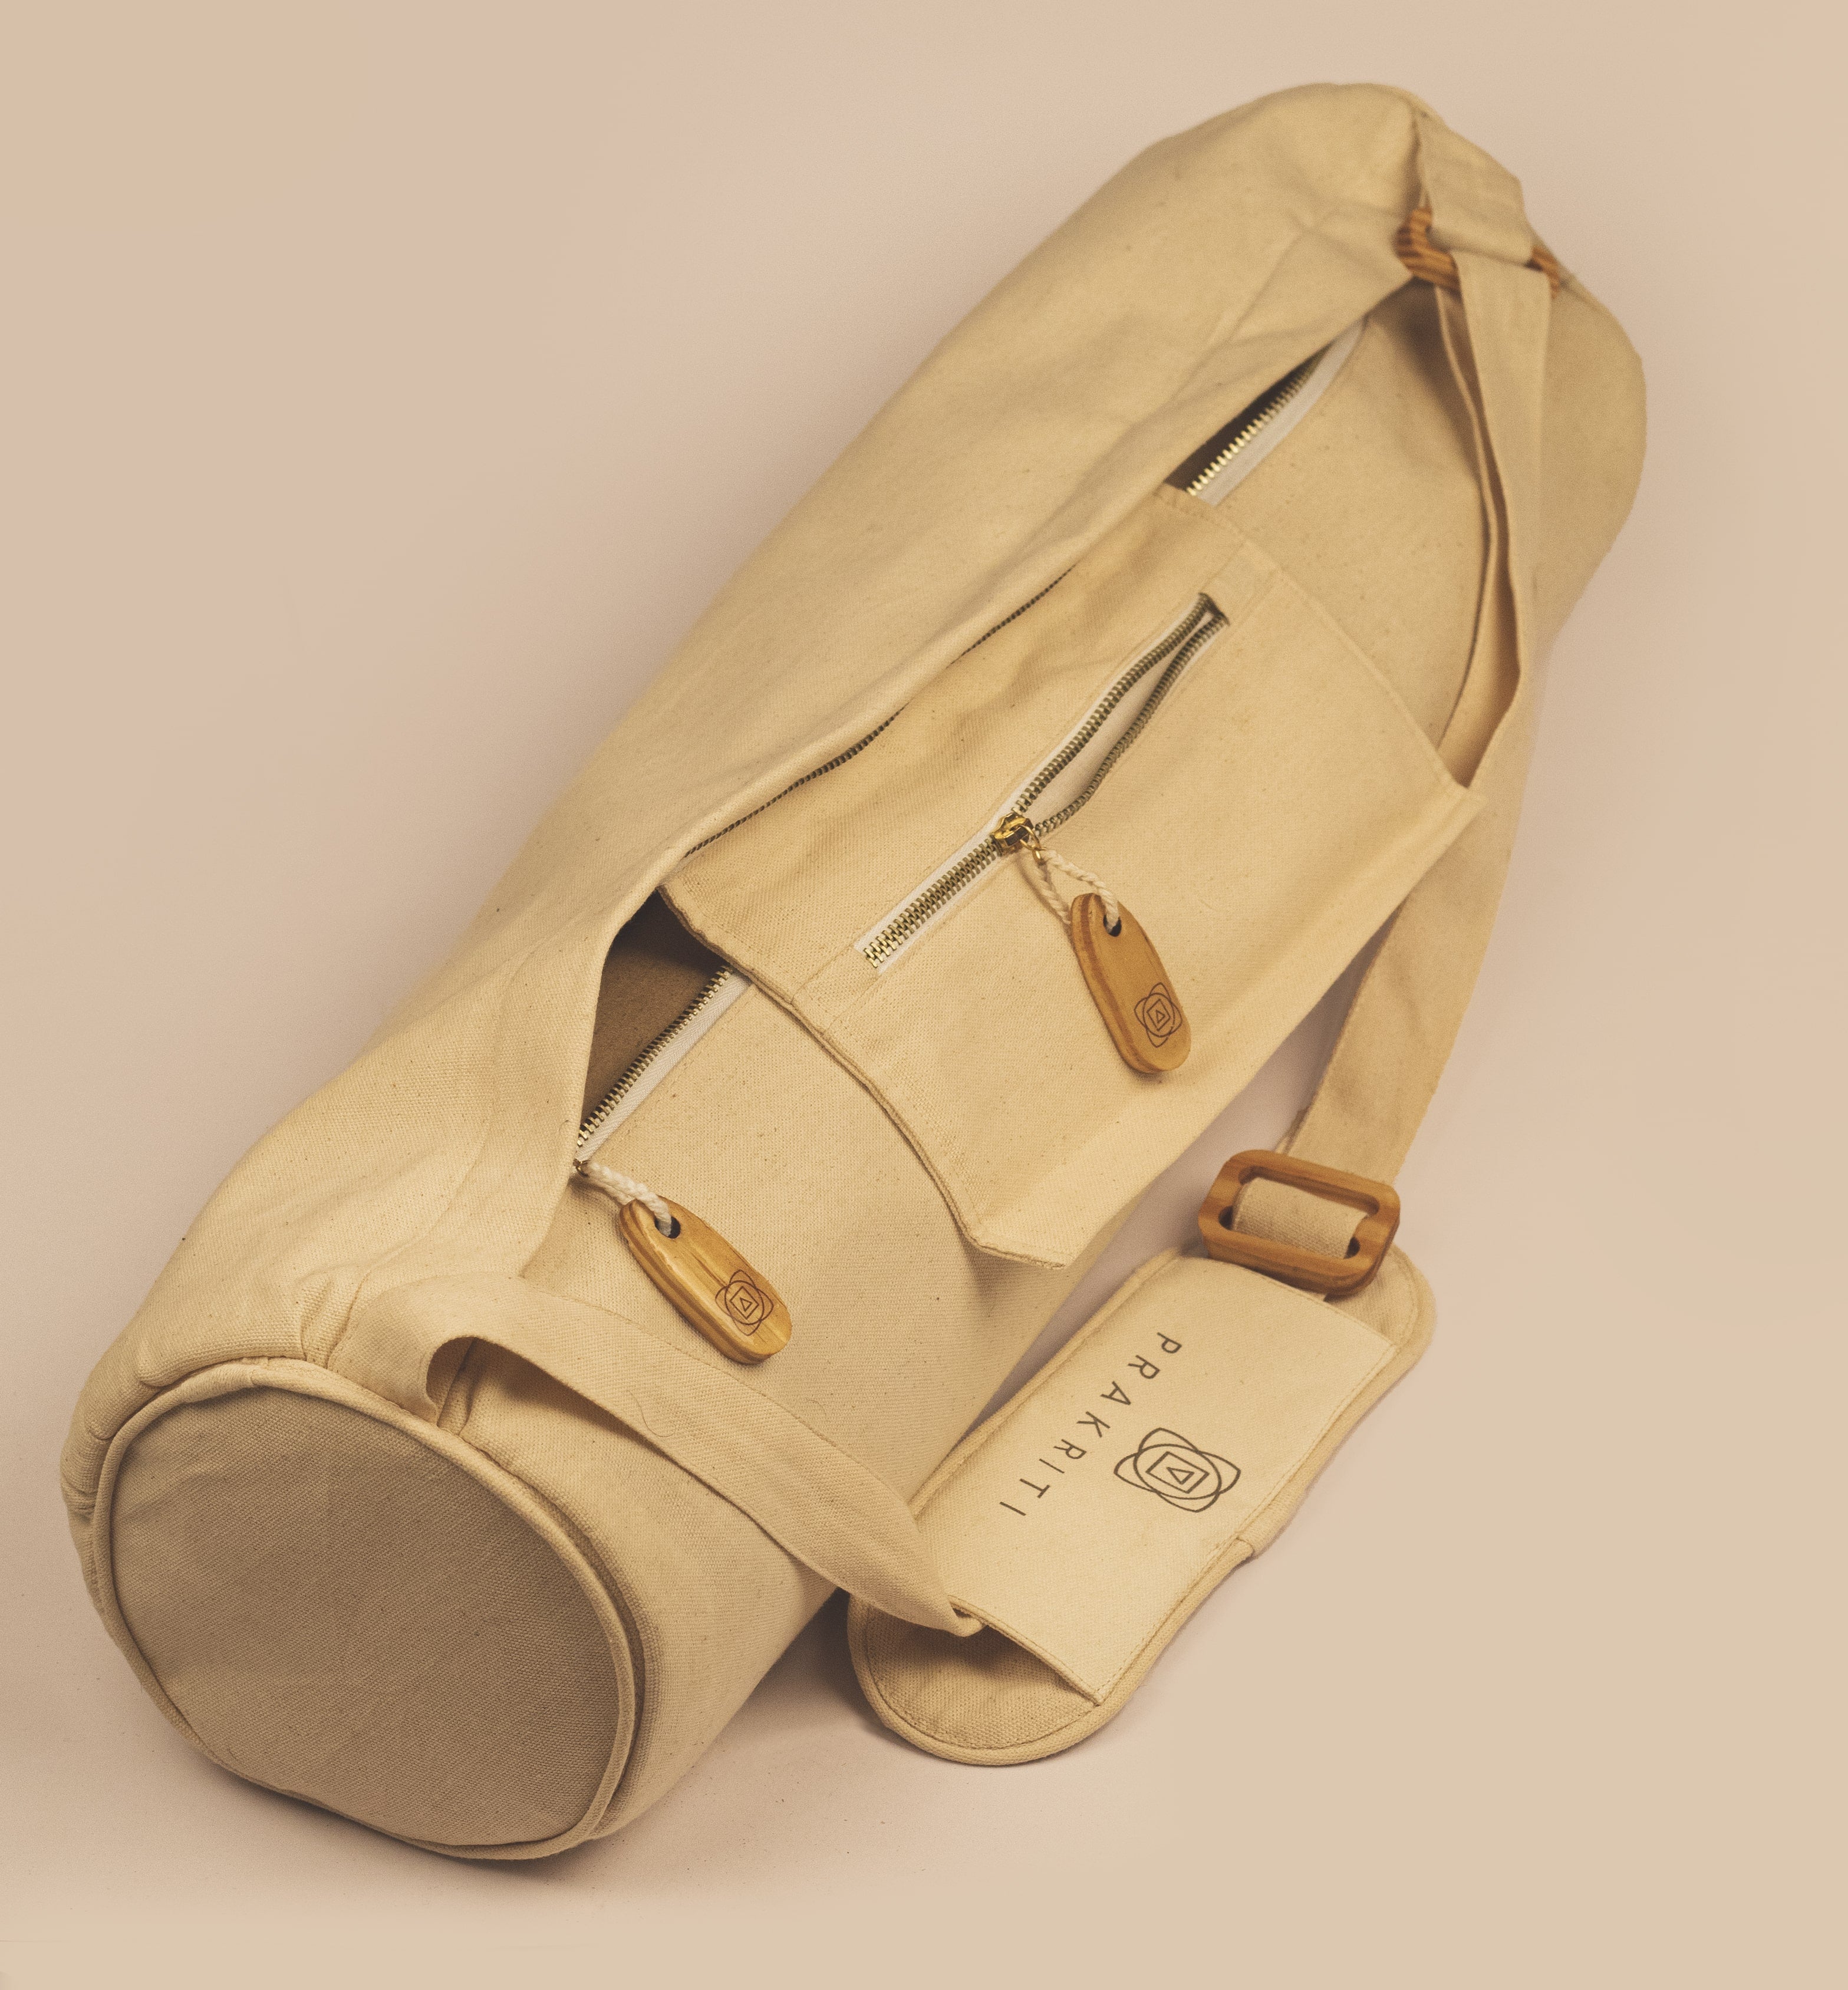 Pro cork Mat + cross body bag